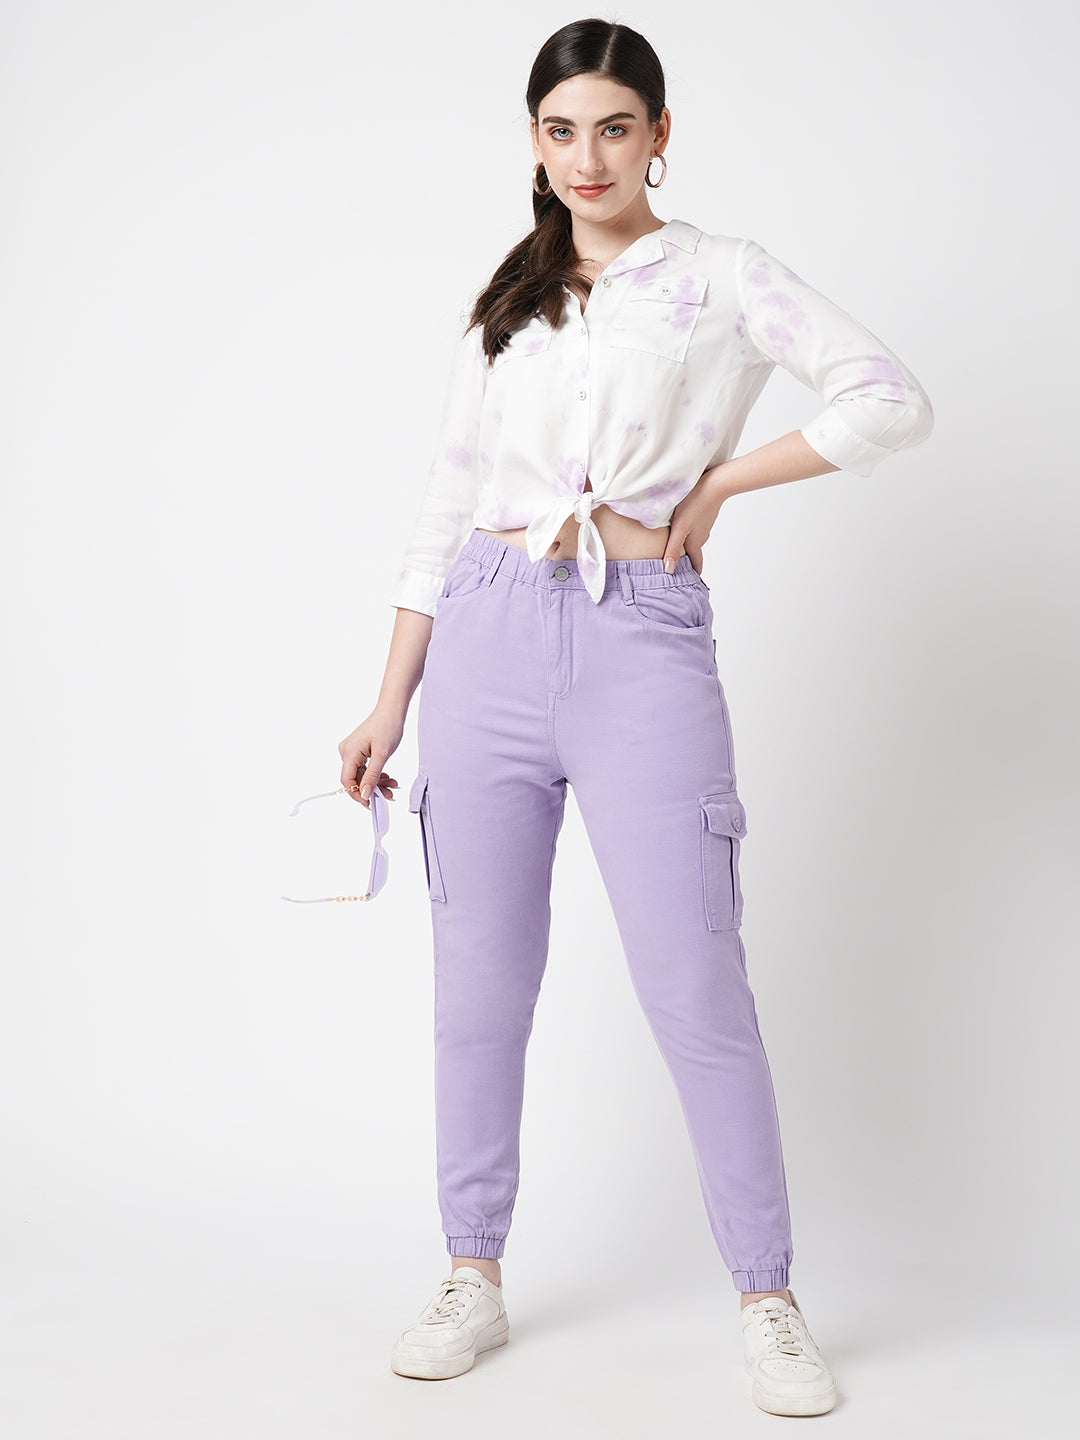 Women Lilac Tie & Dye Three-Quarter Sleeves Shirts